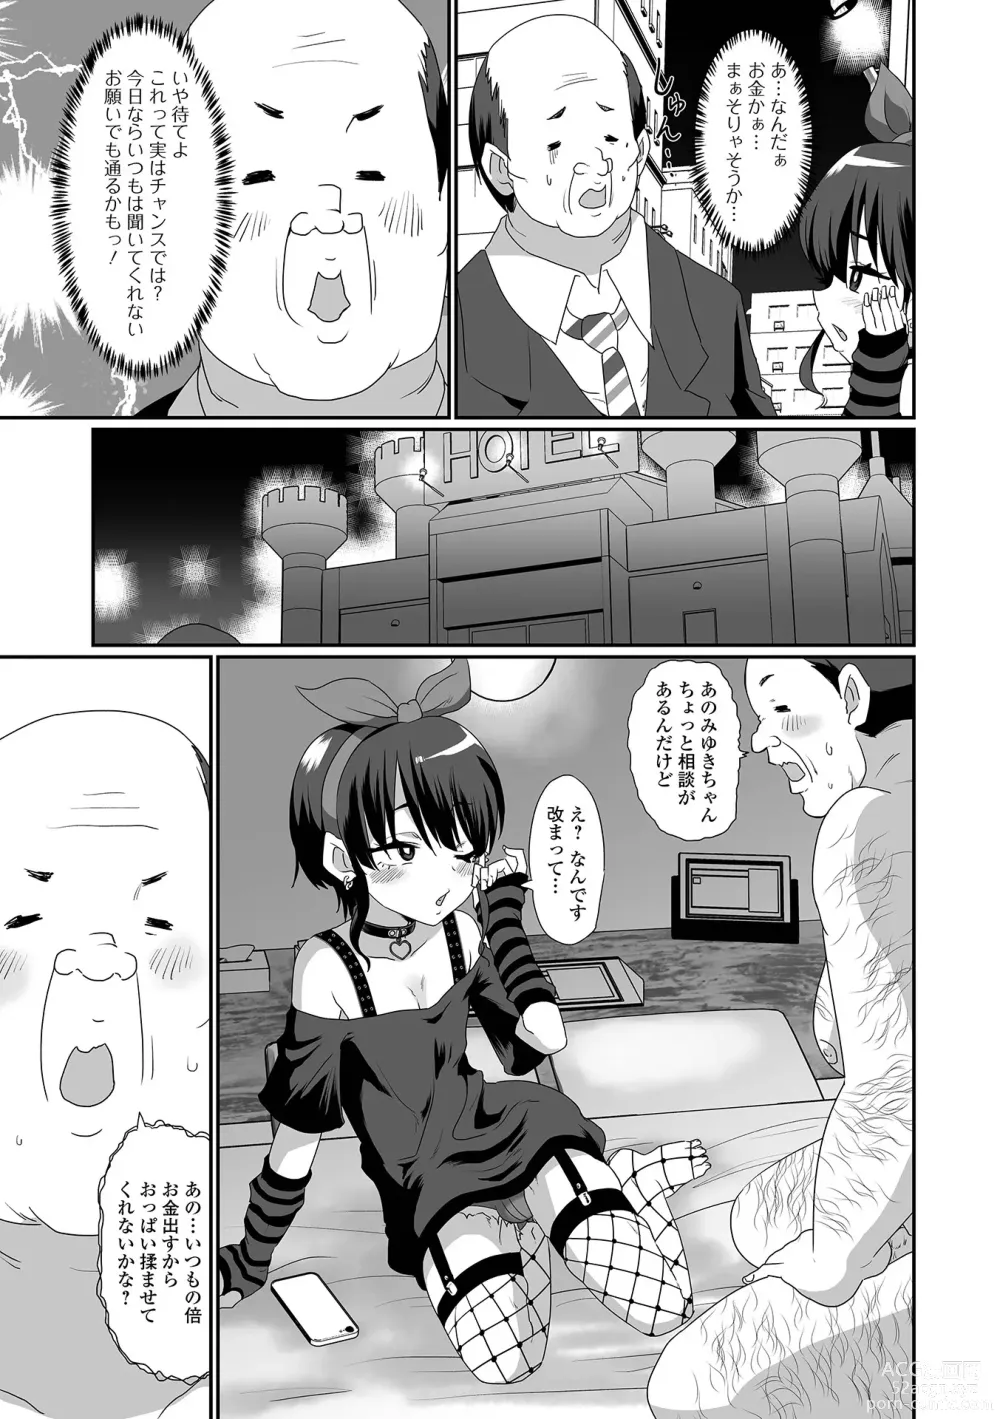 Page 9 of manga Gekkan Web Otoko no Ko-llection! S Vol. 92